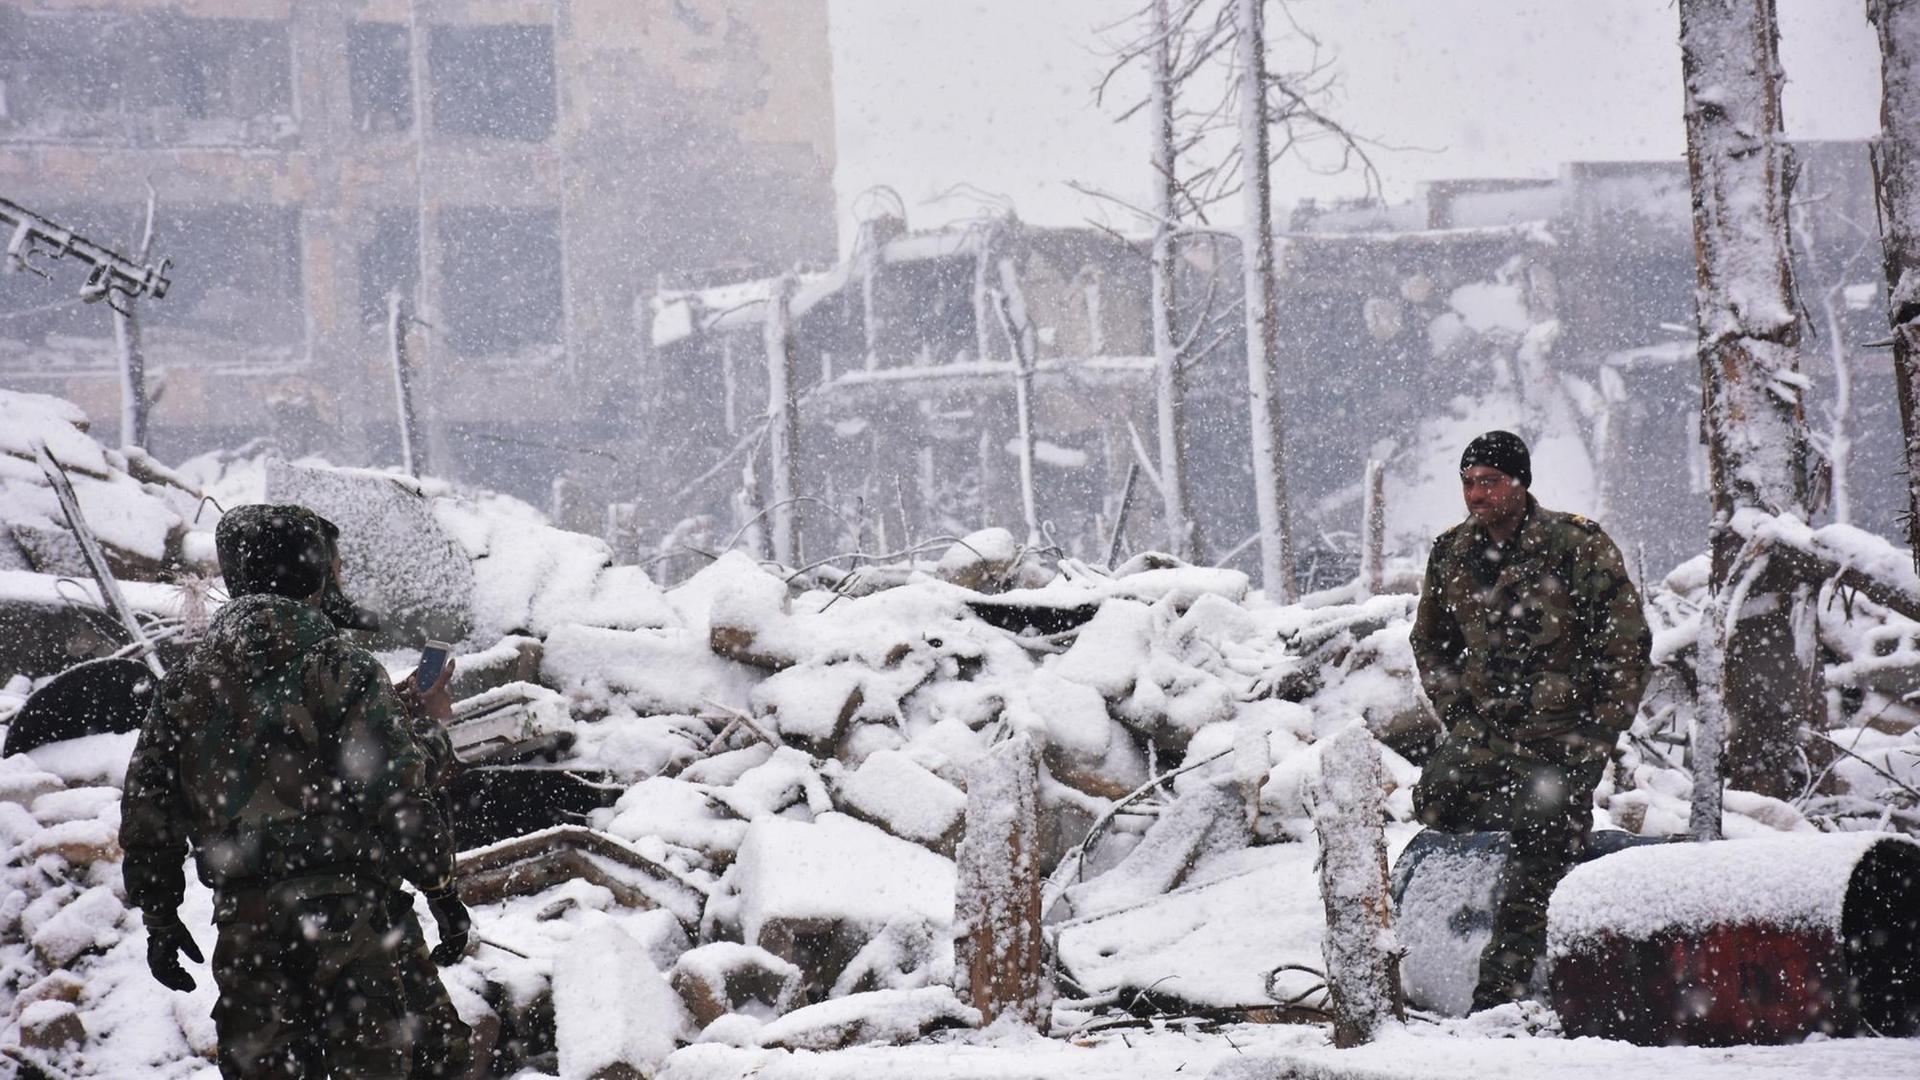 Evakuierung Aleppos im Winter 2016 bei Schneefall.